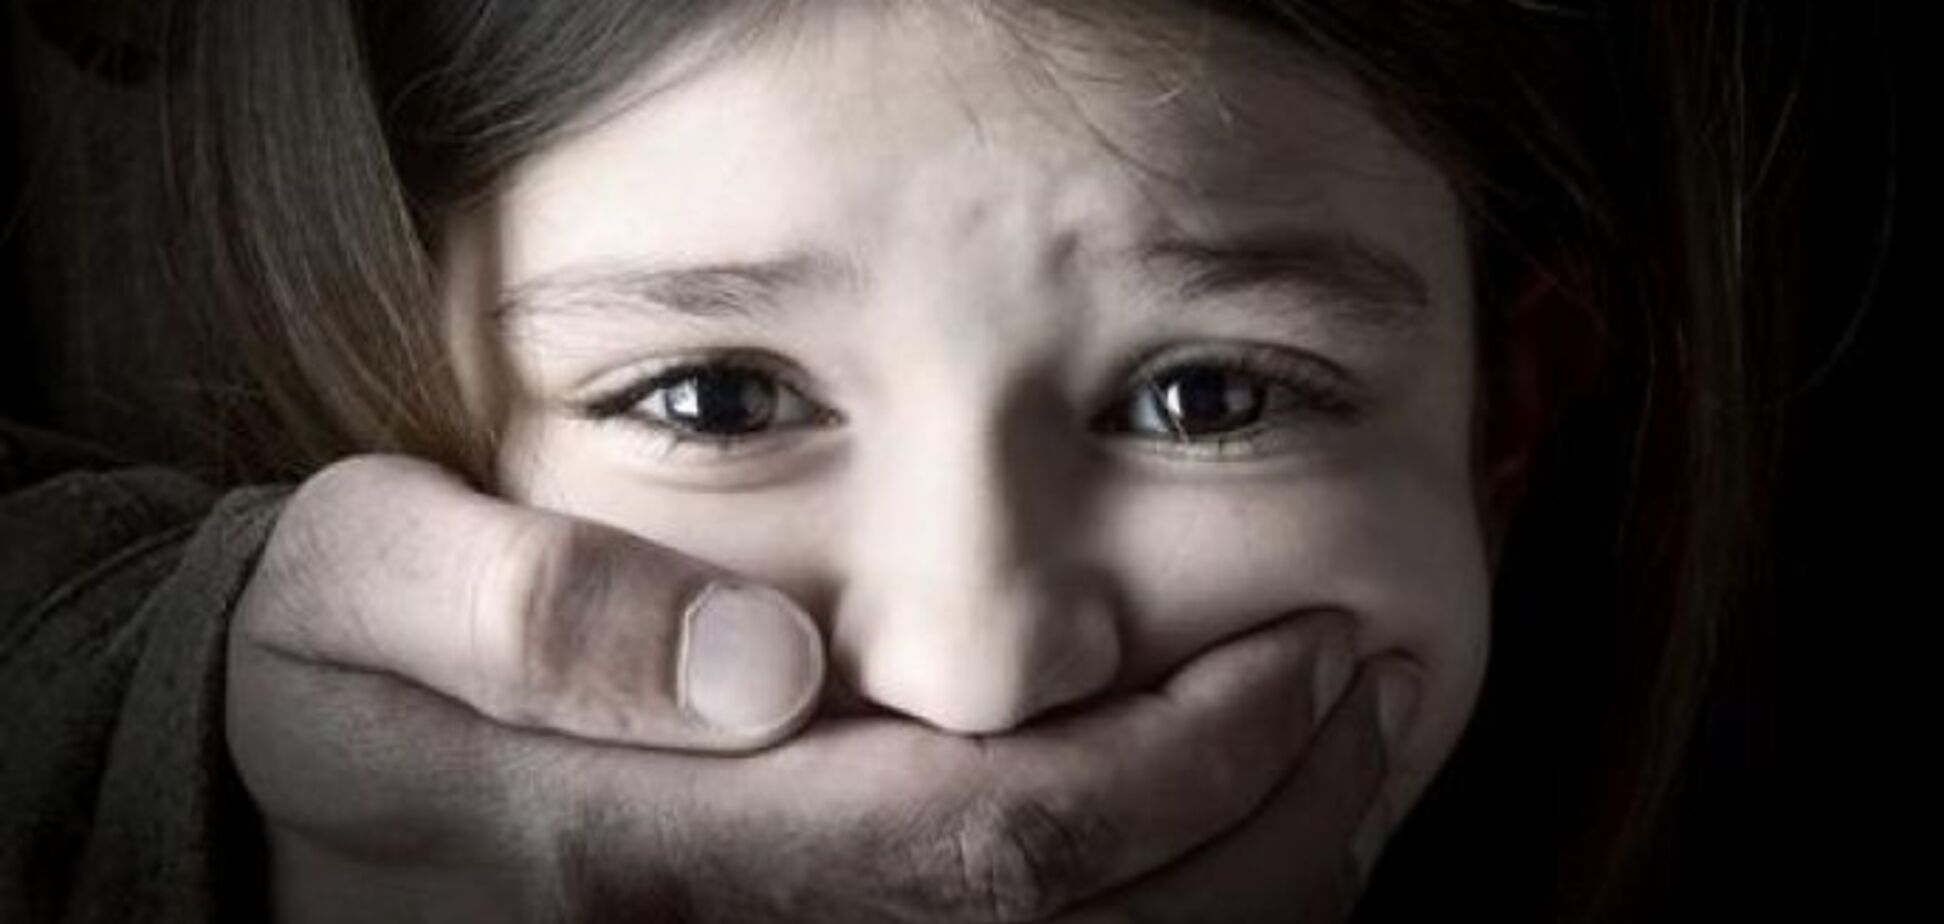 Пытался похитить: в Чернигове прохожие отбили 7-летнюю девочку у наркомана